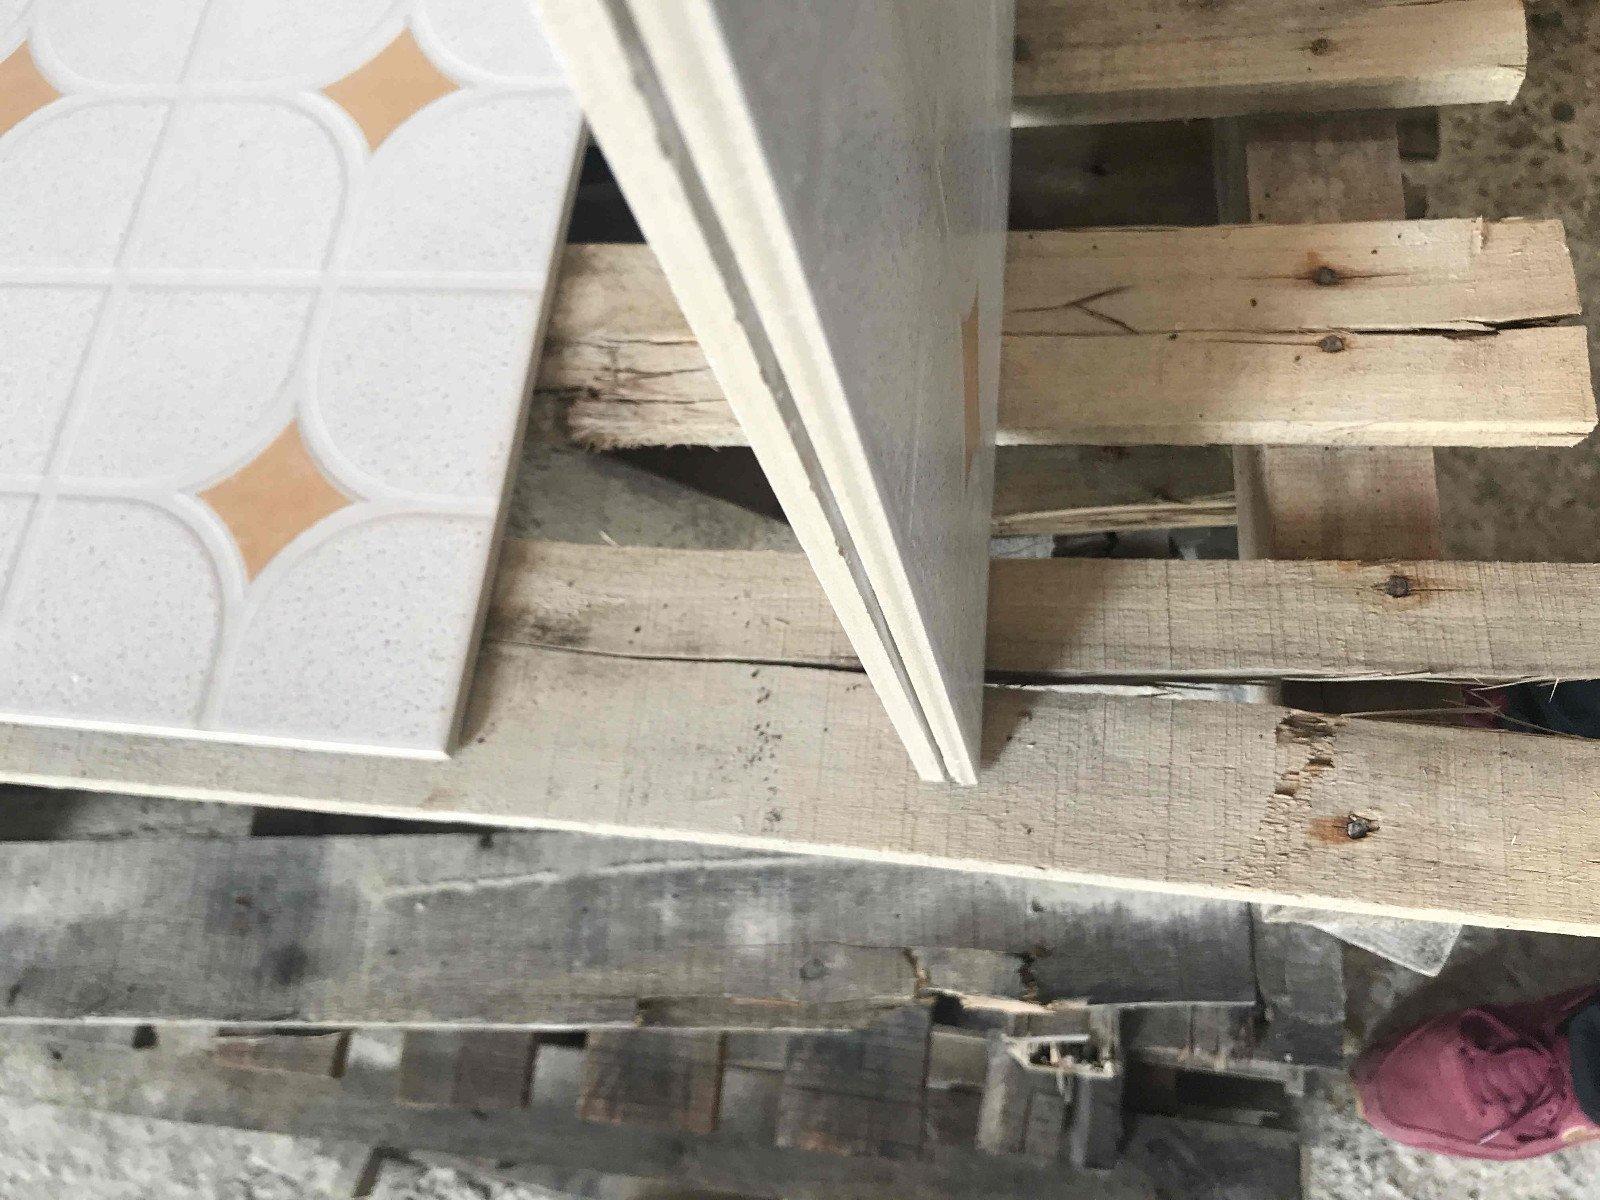 wooden 300x300mm Ceramic Floor Tile tile hardness Hotel